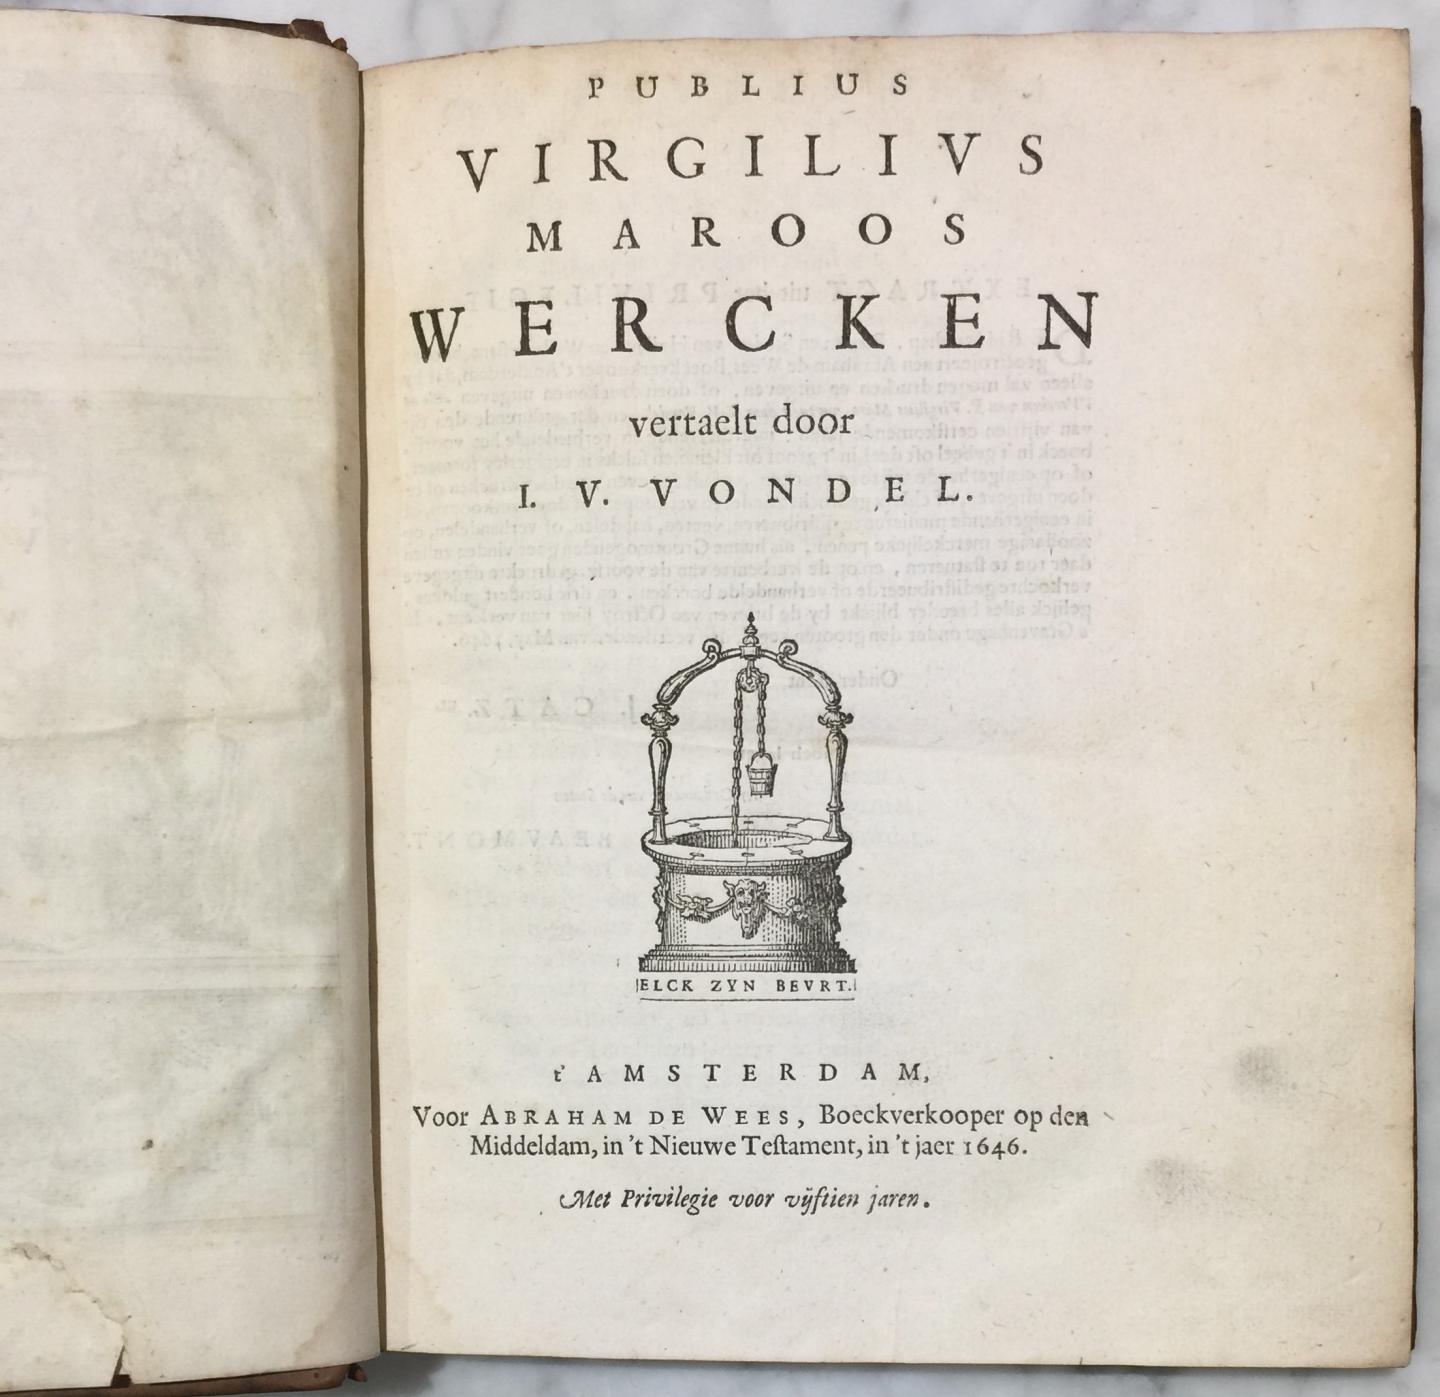 Vondel, Joost van den - Publius Virgilius Maroos Wercken vertaelt door J. v. Vondel